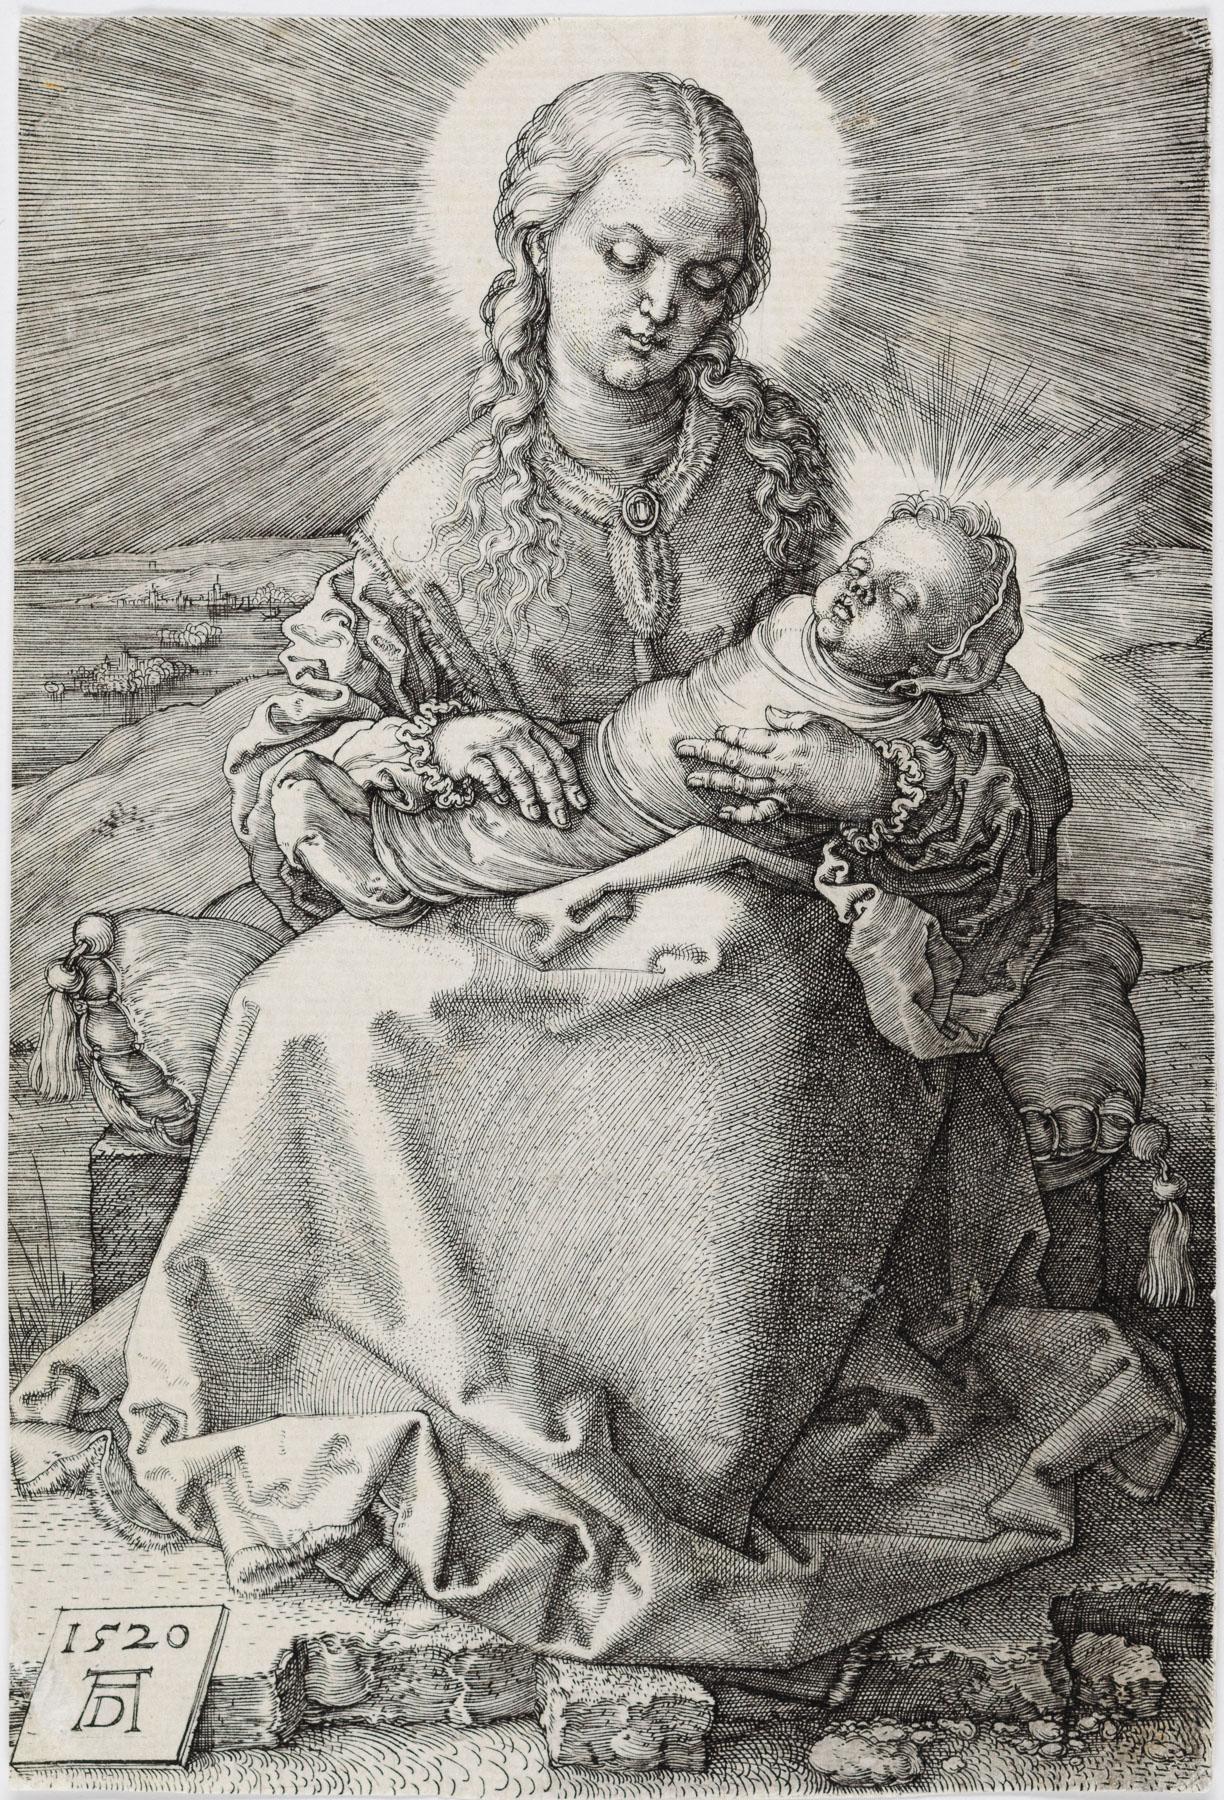 Madonna avec un bébé emmailloté - Print de Albrecht Dürer